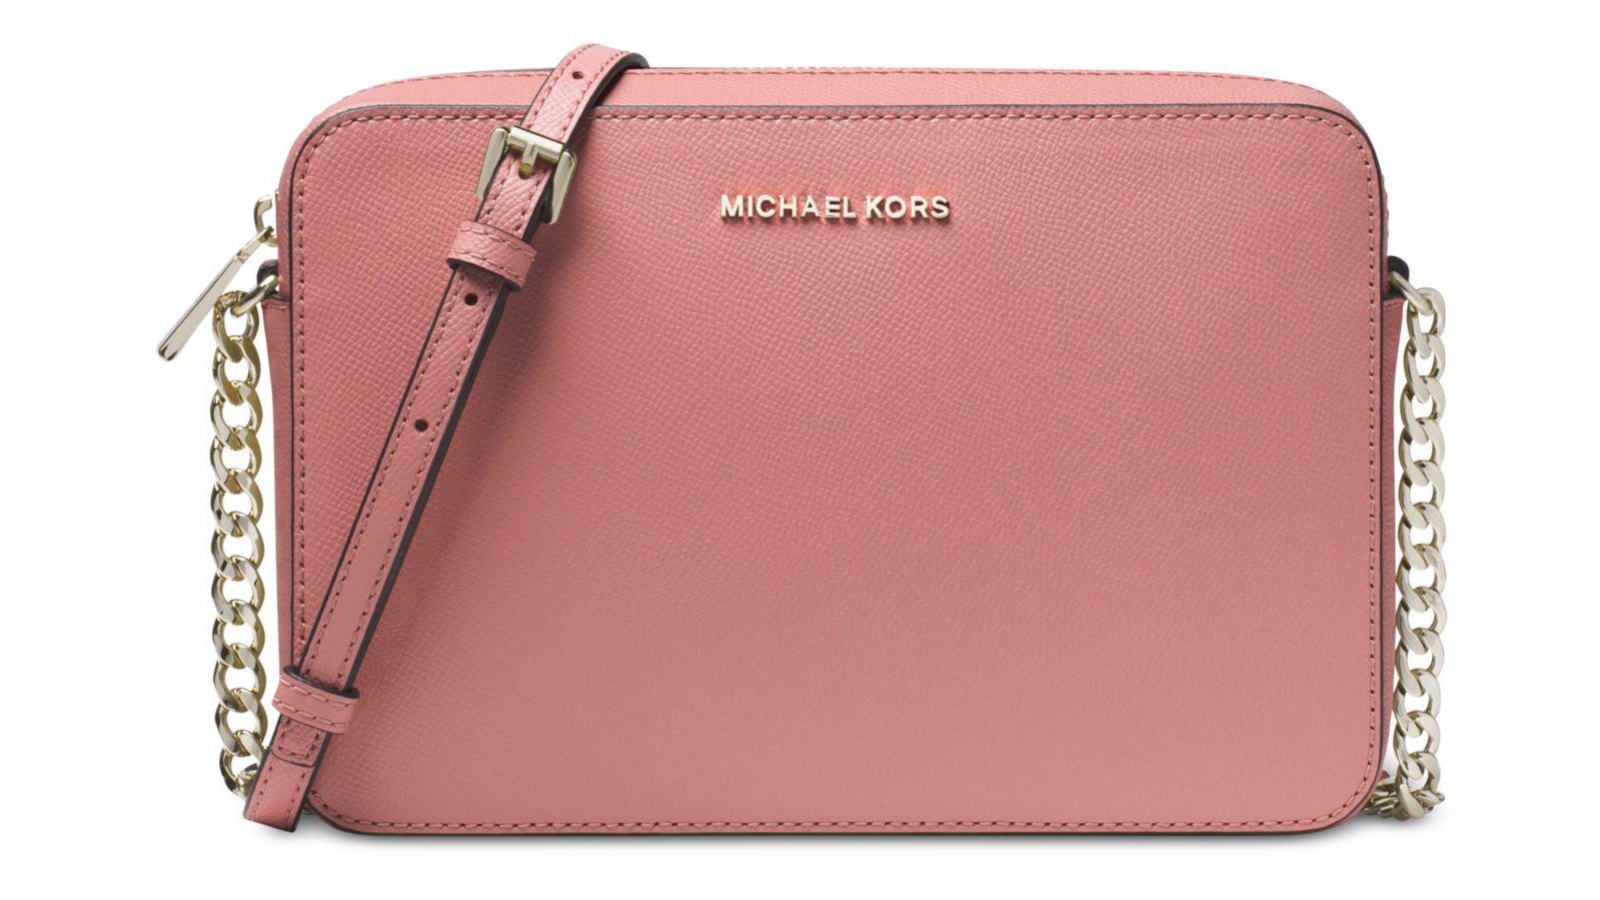 Michael Kors, Bags, Ultra Pink And Brown Michael Kors Tote Bag